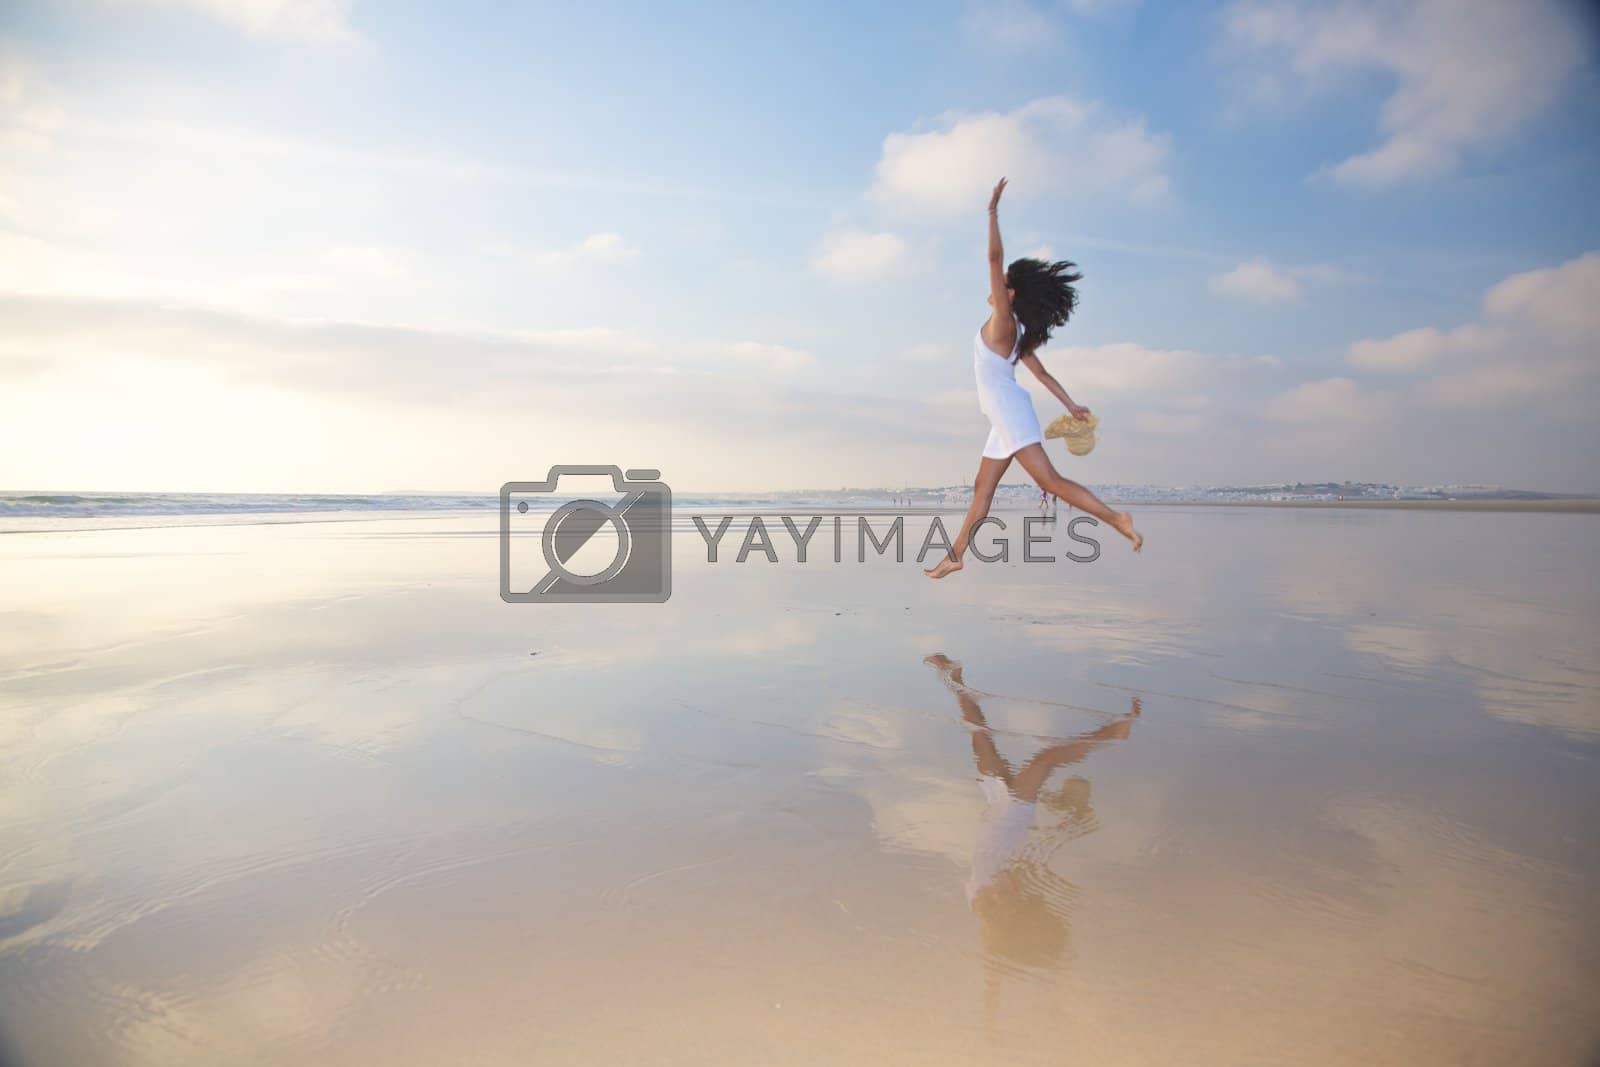 Royalty free image of jumping at seashore by quintanilla